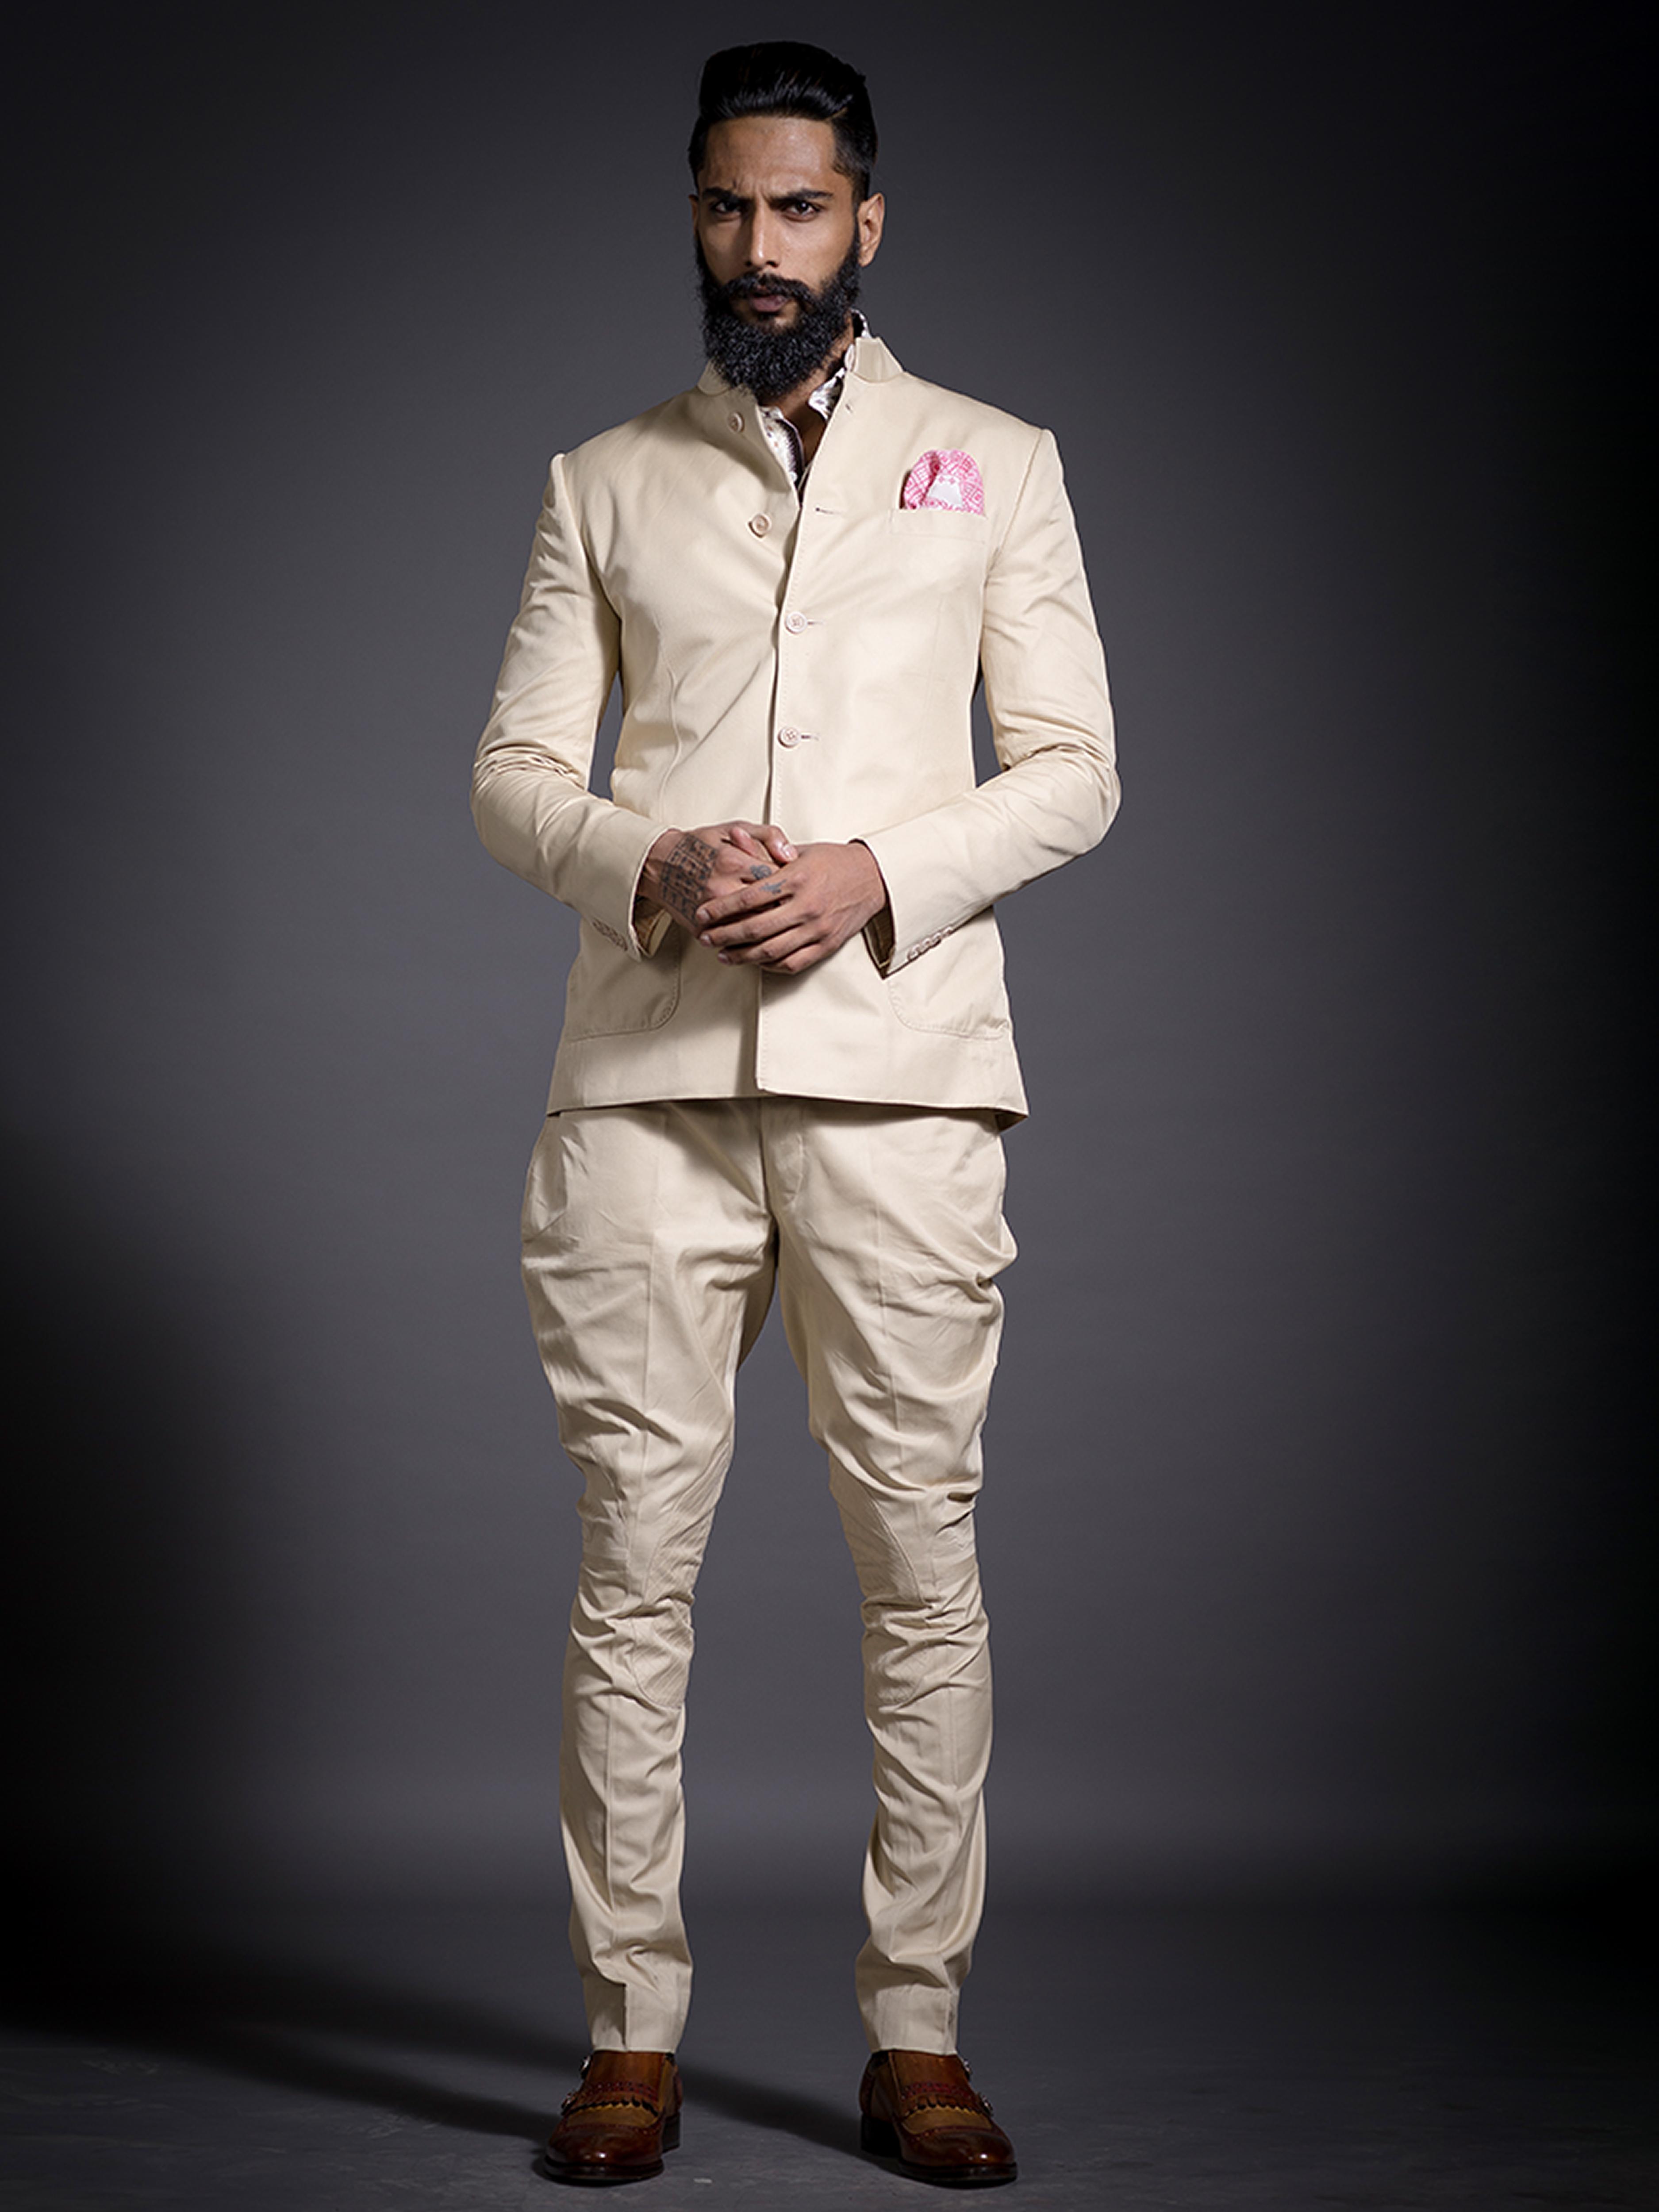 Classic and Stylish White Jodhpuri Breeches – Rajanyas